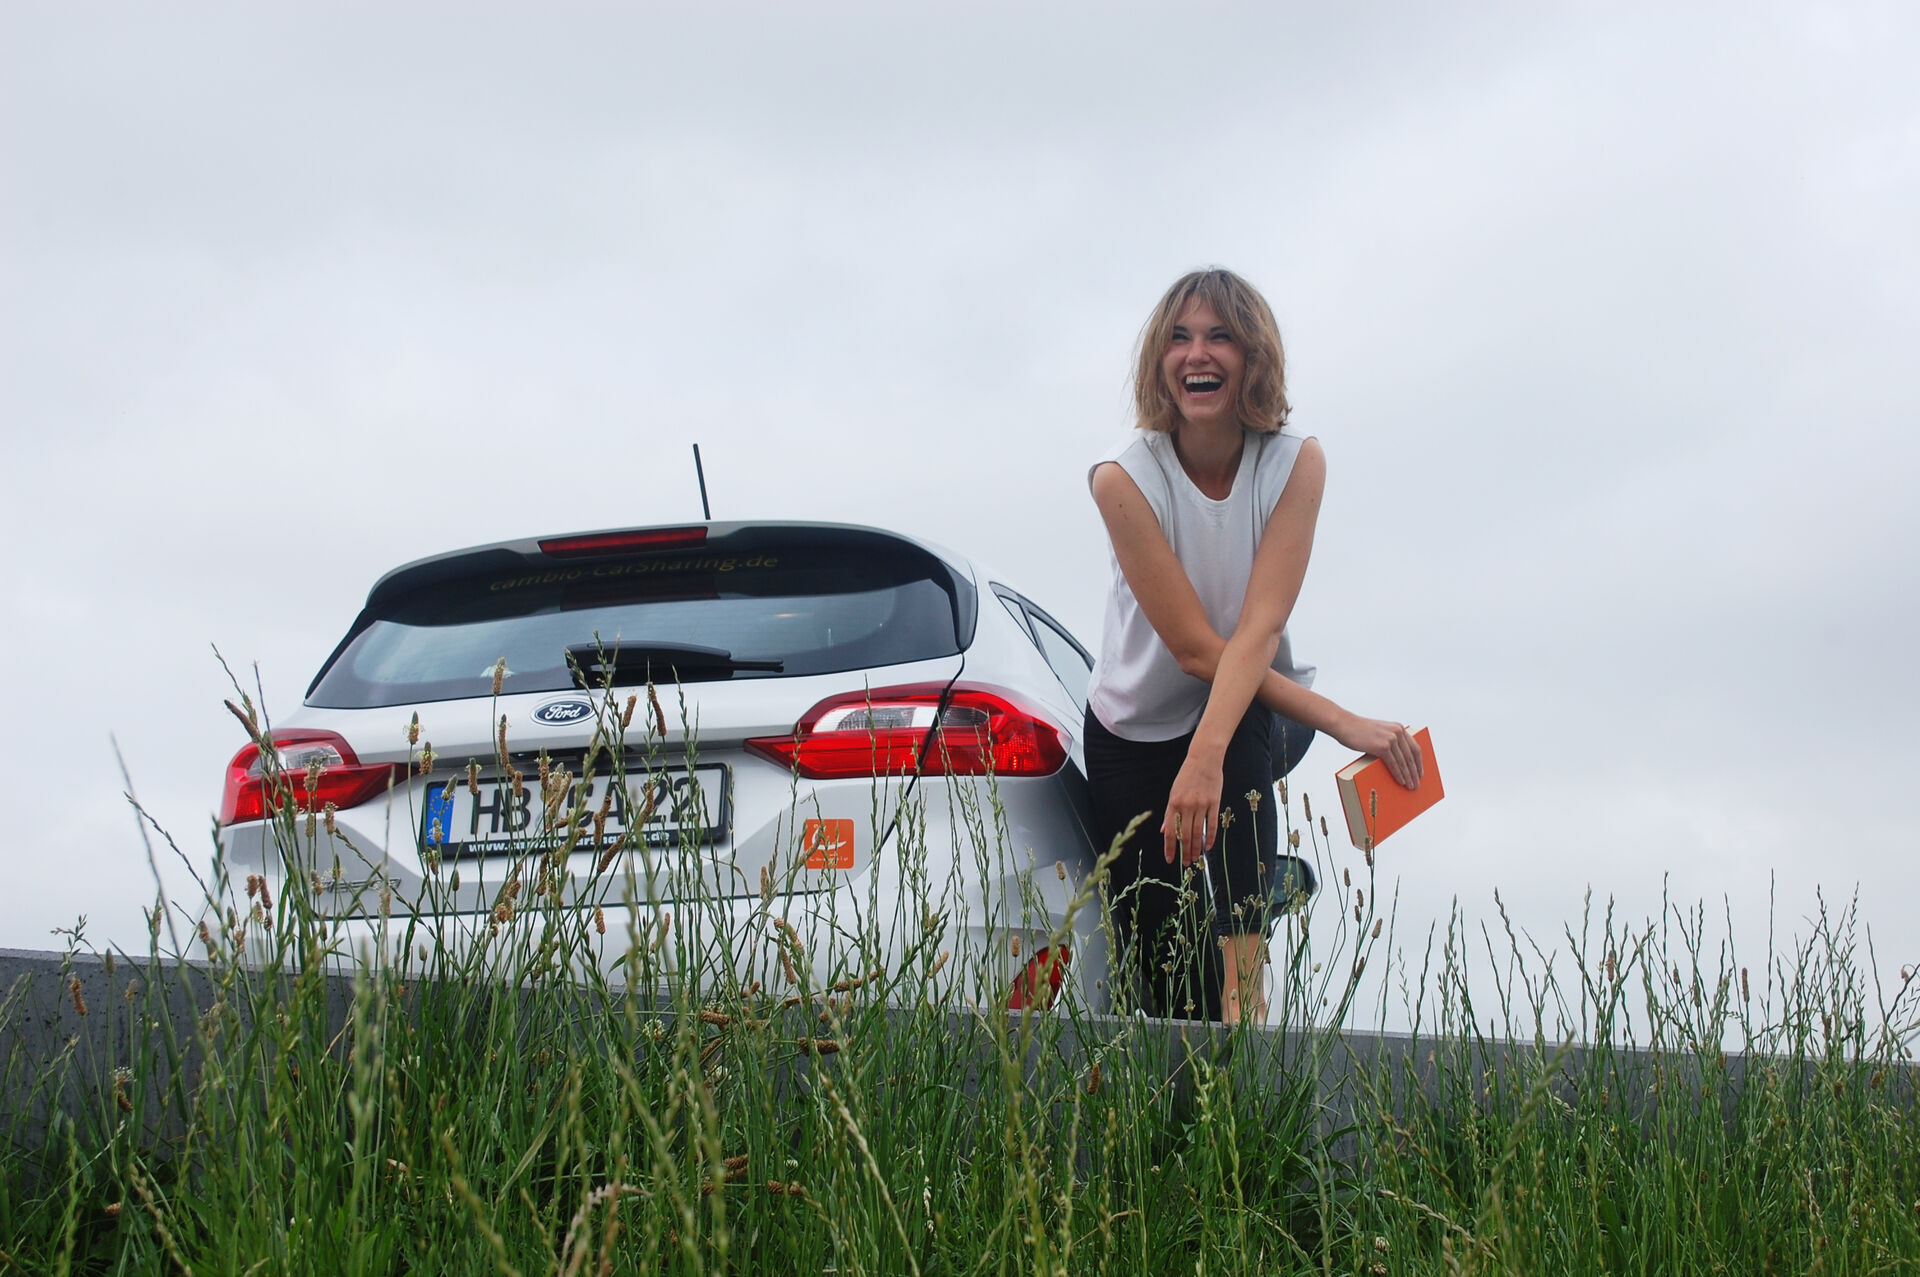 Rückansicht eines silberfarbenen Autos, daneben eine lachende Frau leicht vornübergebeugt mit einem orangenen Buch in der Hand. Beides ist leicht von hohen Gras bedeckt, im Hintergrund blaugrauer Himmel.